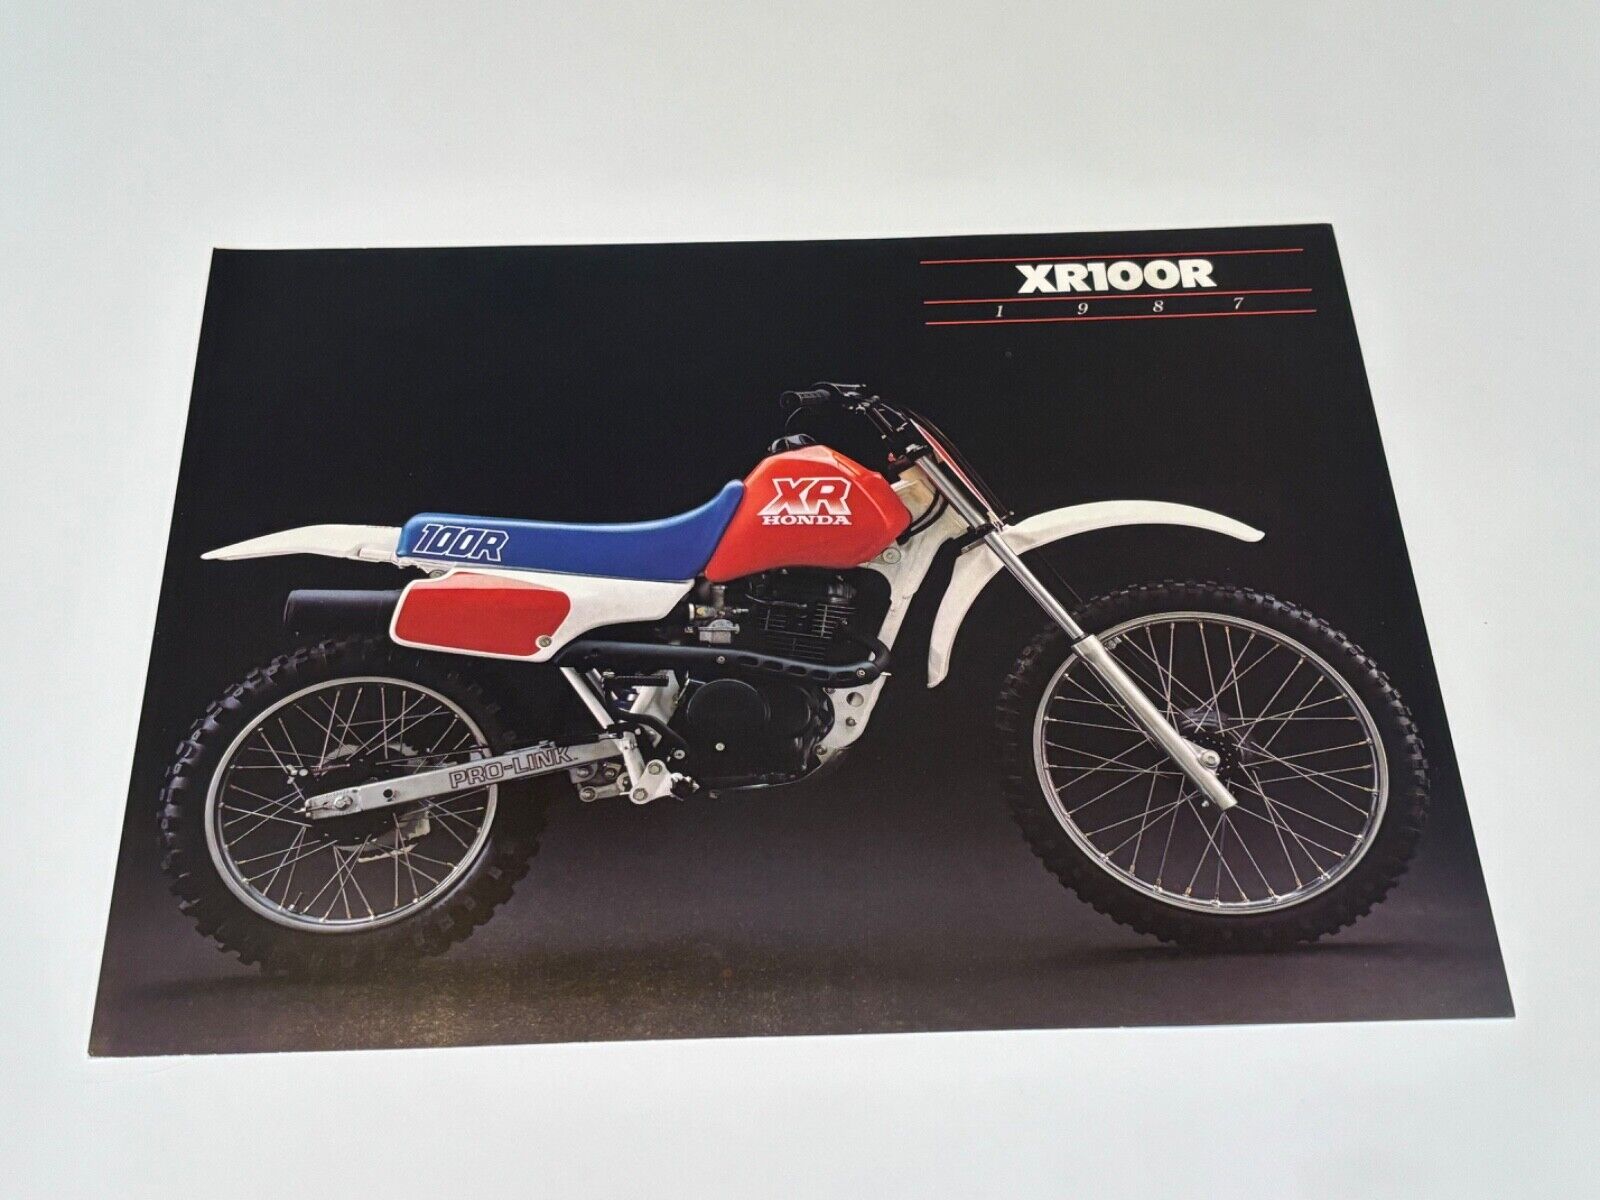 Original 1987 Honda XR100R Motorcycle Dealer Sales Brochure